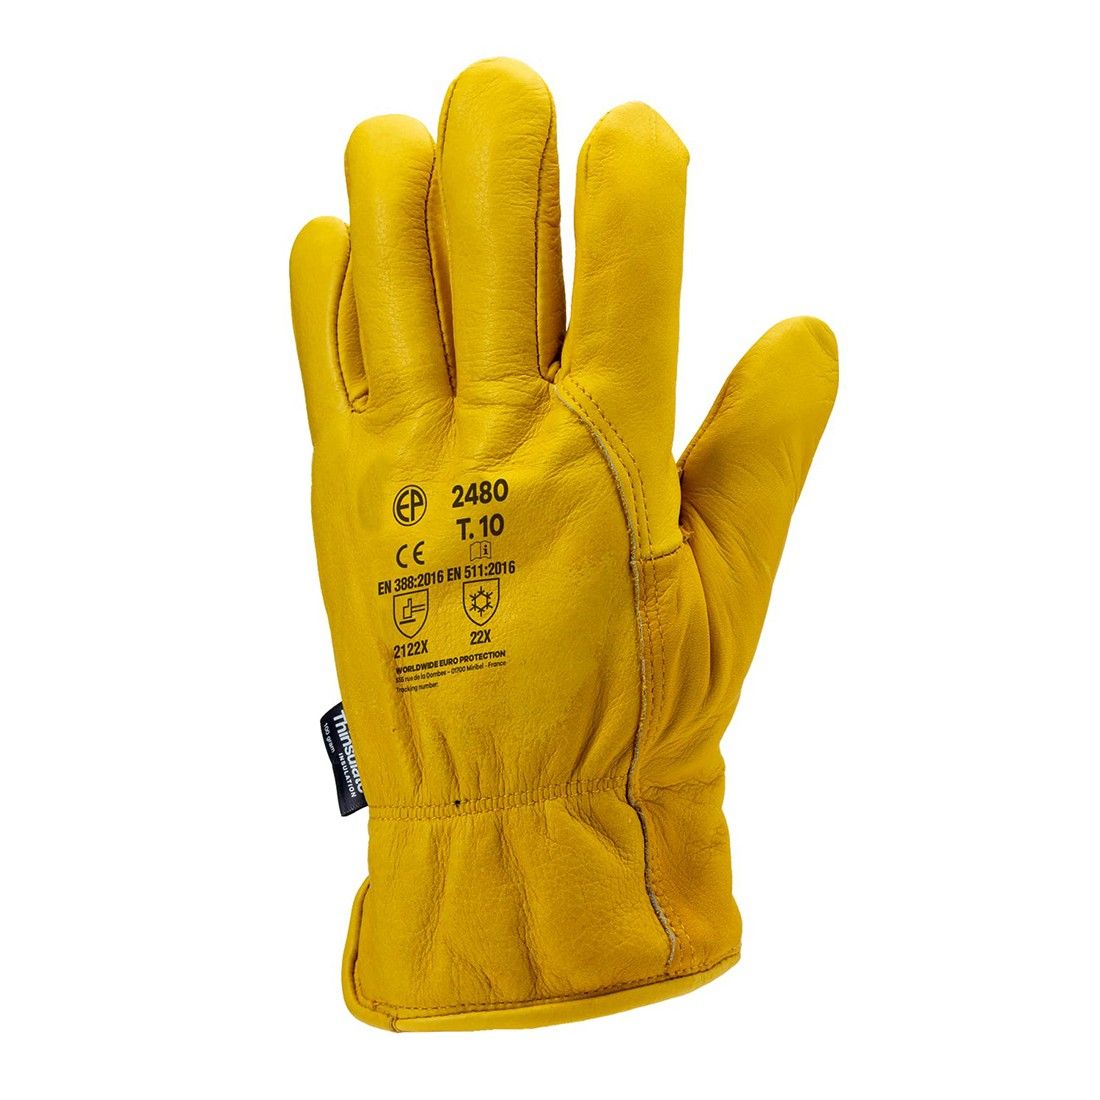 Coverguard - Sur gants électricien hydrofuge jaune beige manchette 15cm  EUROHEAT 2550 (Pack de 12)